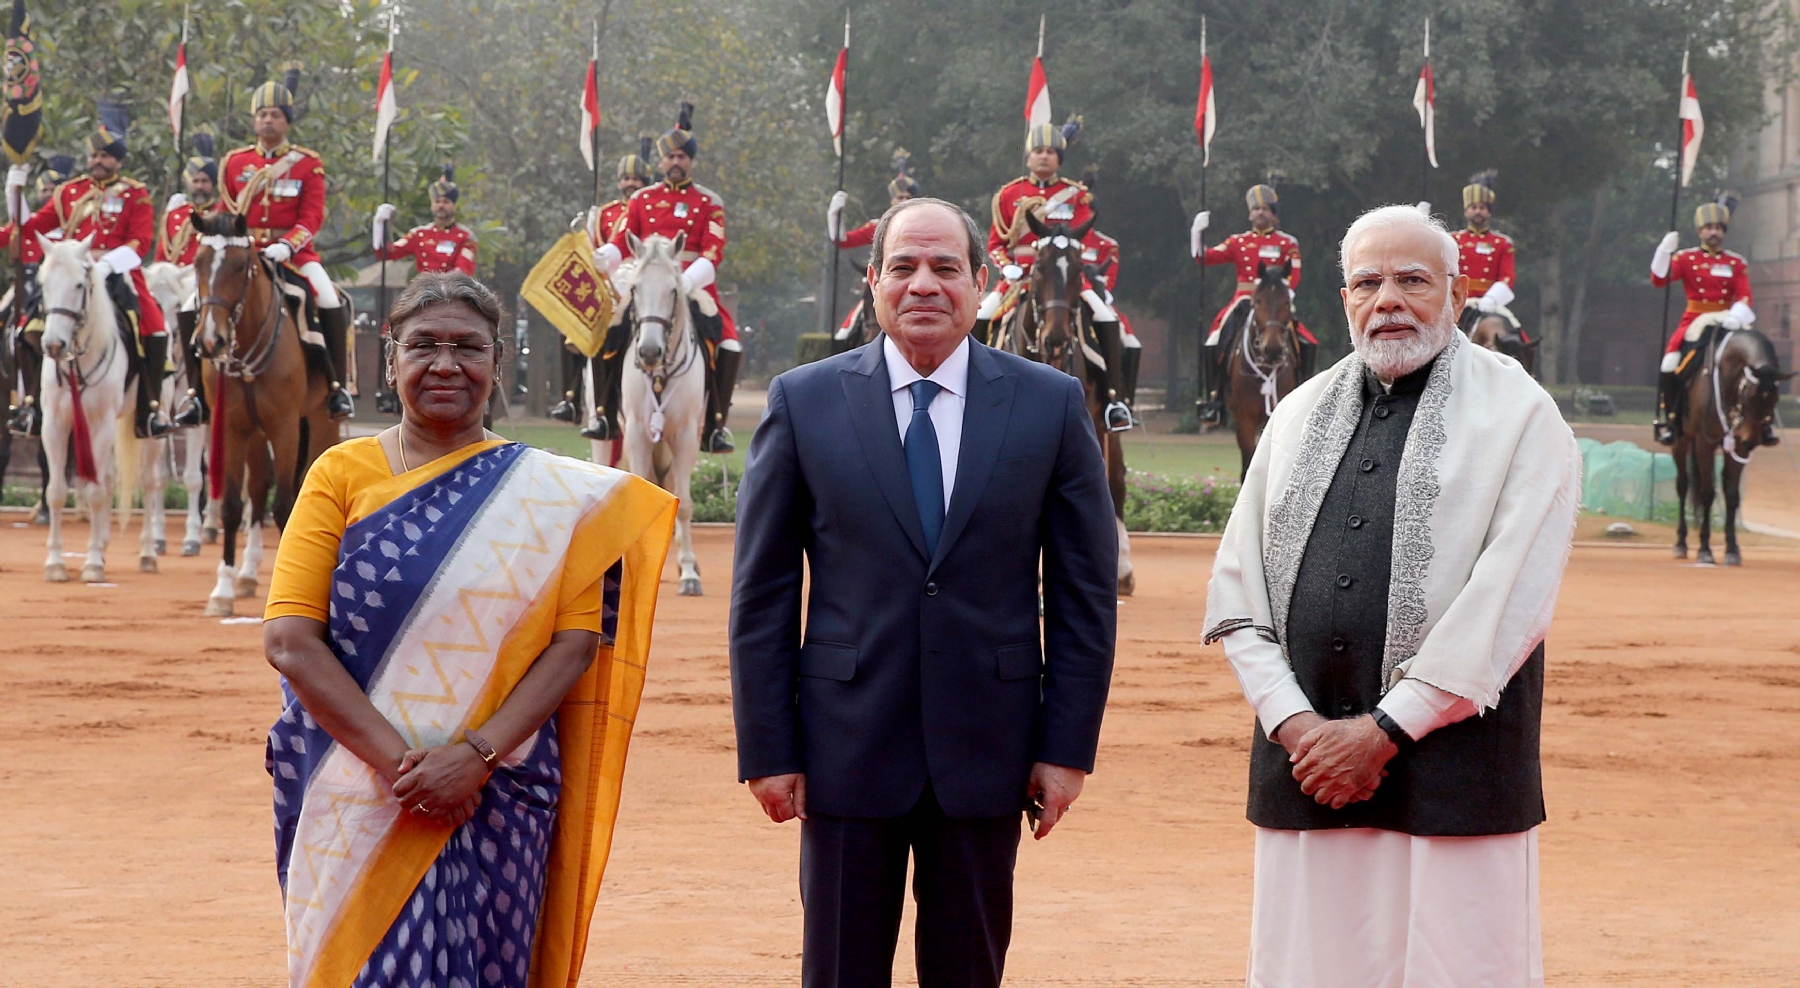 नई दिल्ली में बुधवार 25 जनवरी को राष्ट्रपति भवन में राष्ट्रपति द्रौपदी मुर्मू और प्रधानमंत्री नरेन्द्र मोदी, मिस्र के राष्ट्रपति अब्दुल फतेह अल-सिसी का औपचारिक स्वागत करते हुए। हिन्दुस्थान समाचार/ फोटो गणेश बिष्ट 